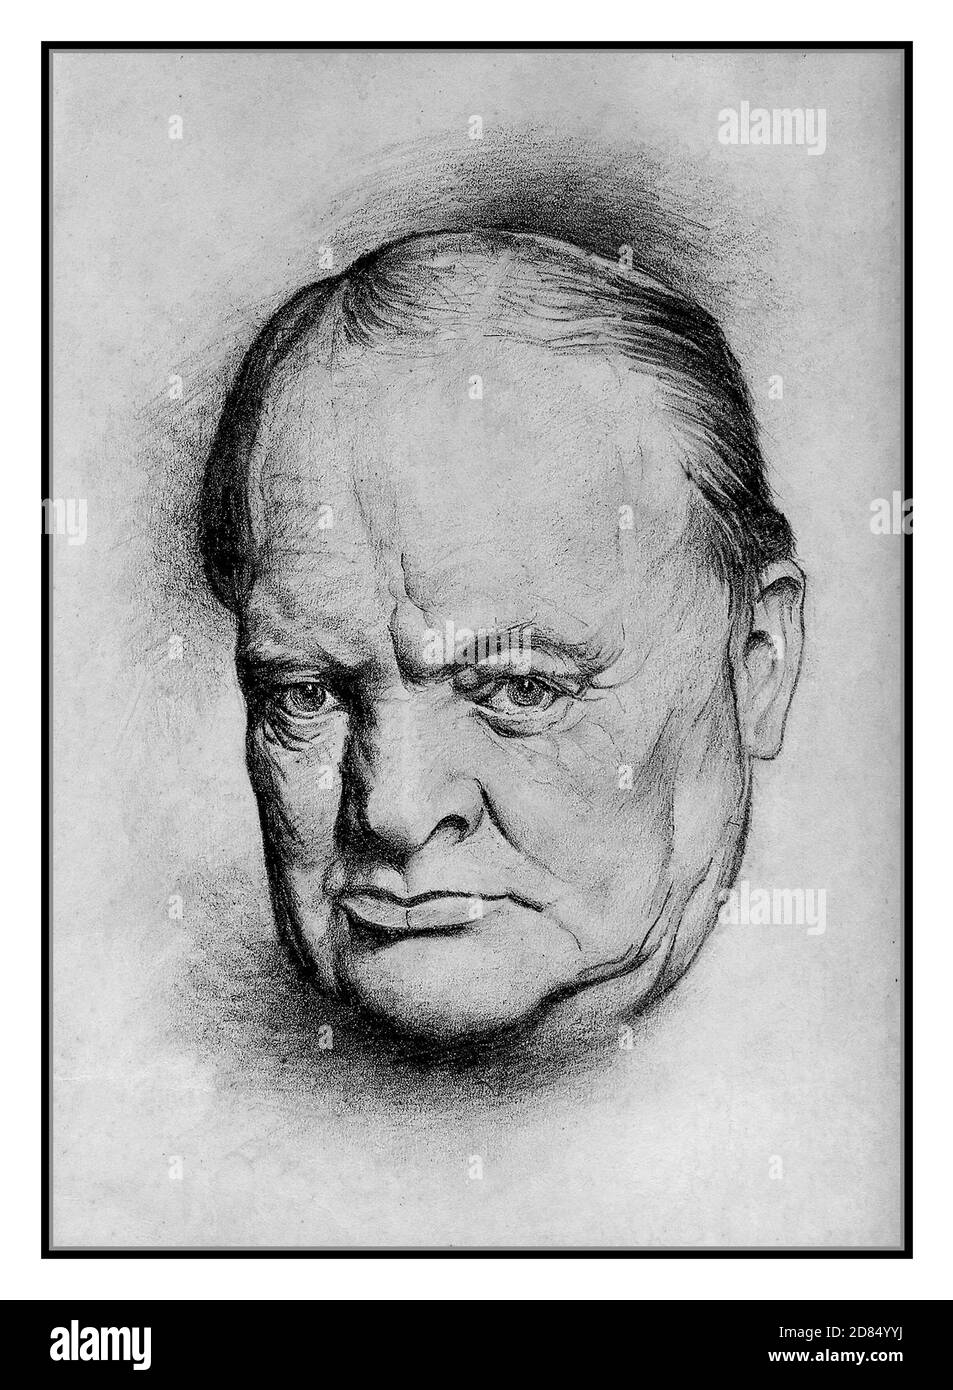 Archivo WW2 Winston Churchill líder inspirador y primer Ministro Segunda Guerra Mundial Retrato cabeza y hombros B&W dibujo por Lyn Ott en 1942. Del primer Ministro británico de guerra Churchill Lyn Ott (1926-1998) fue un pintor estadounidense. Foto de stock